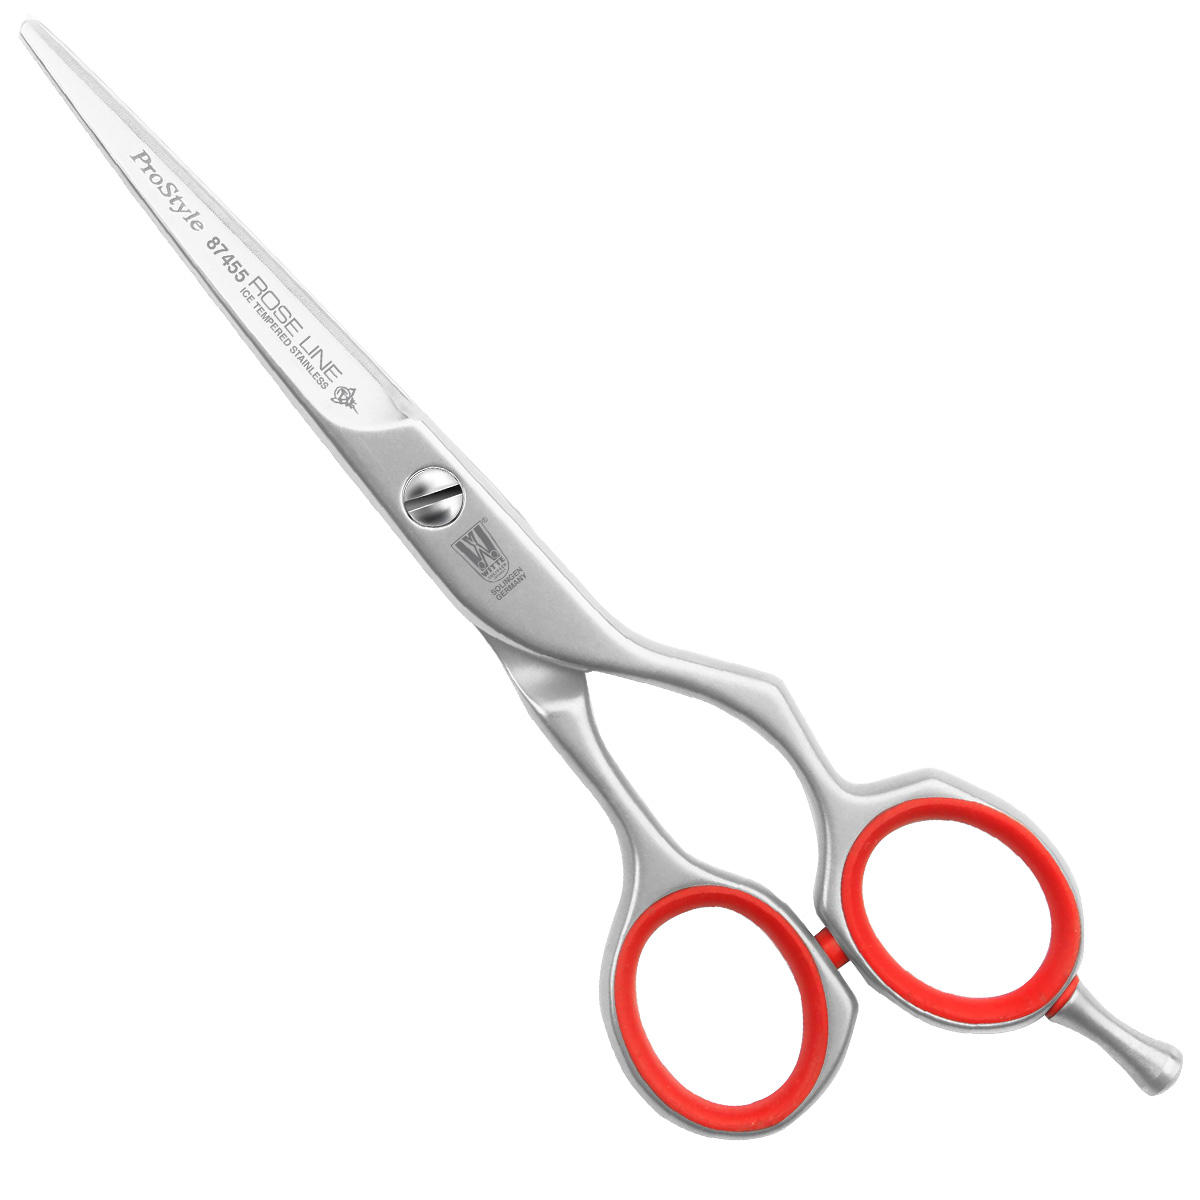 Witte Rose Line ProStyle Ergo Hair Scissors  - 1